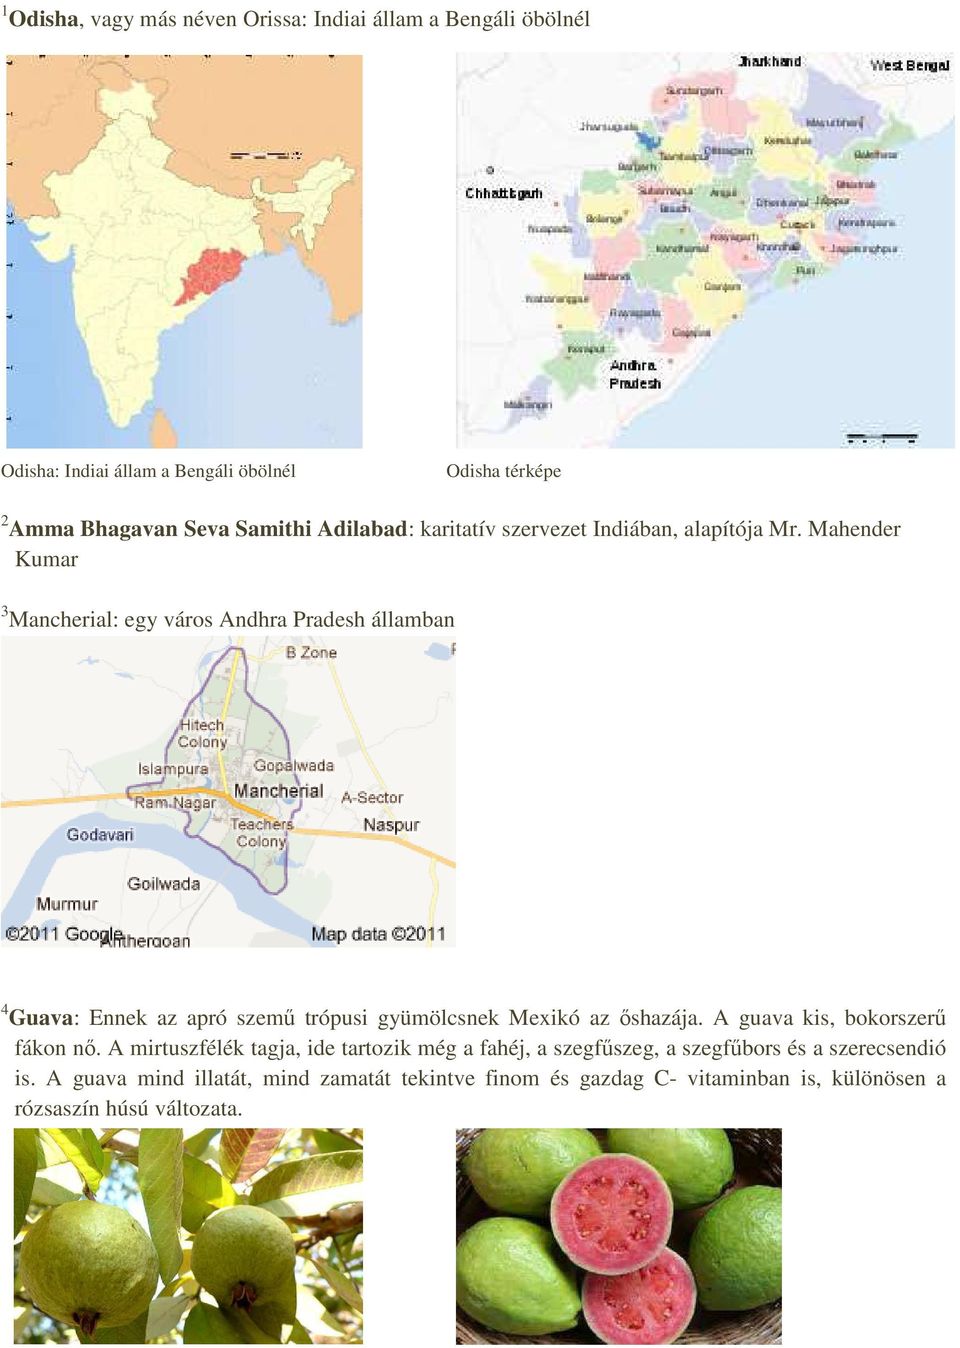 Mahender Kumar 3 Mancherial: egy város Andhra Pradesh államban 4 Guava: Ennek az apró szemű trópusi gyümölcsnek Mexikó az őshazája.